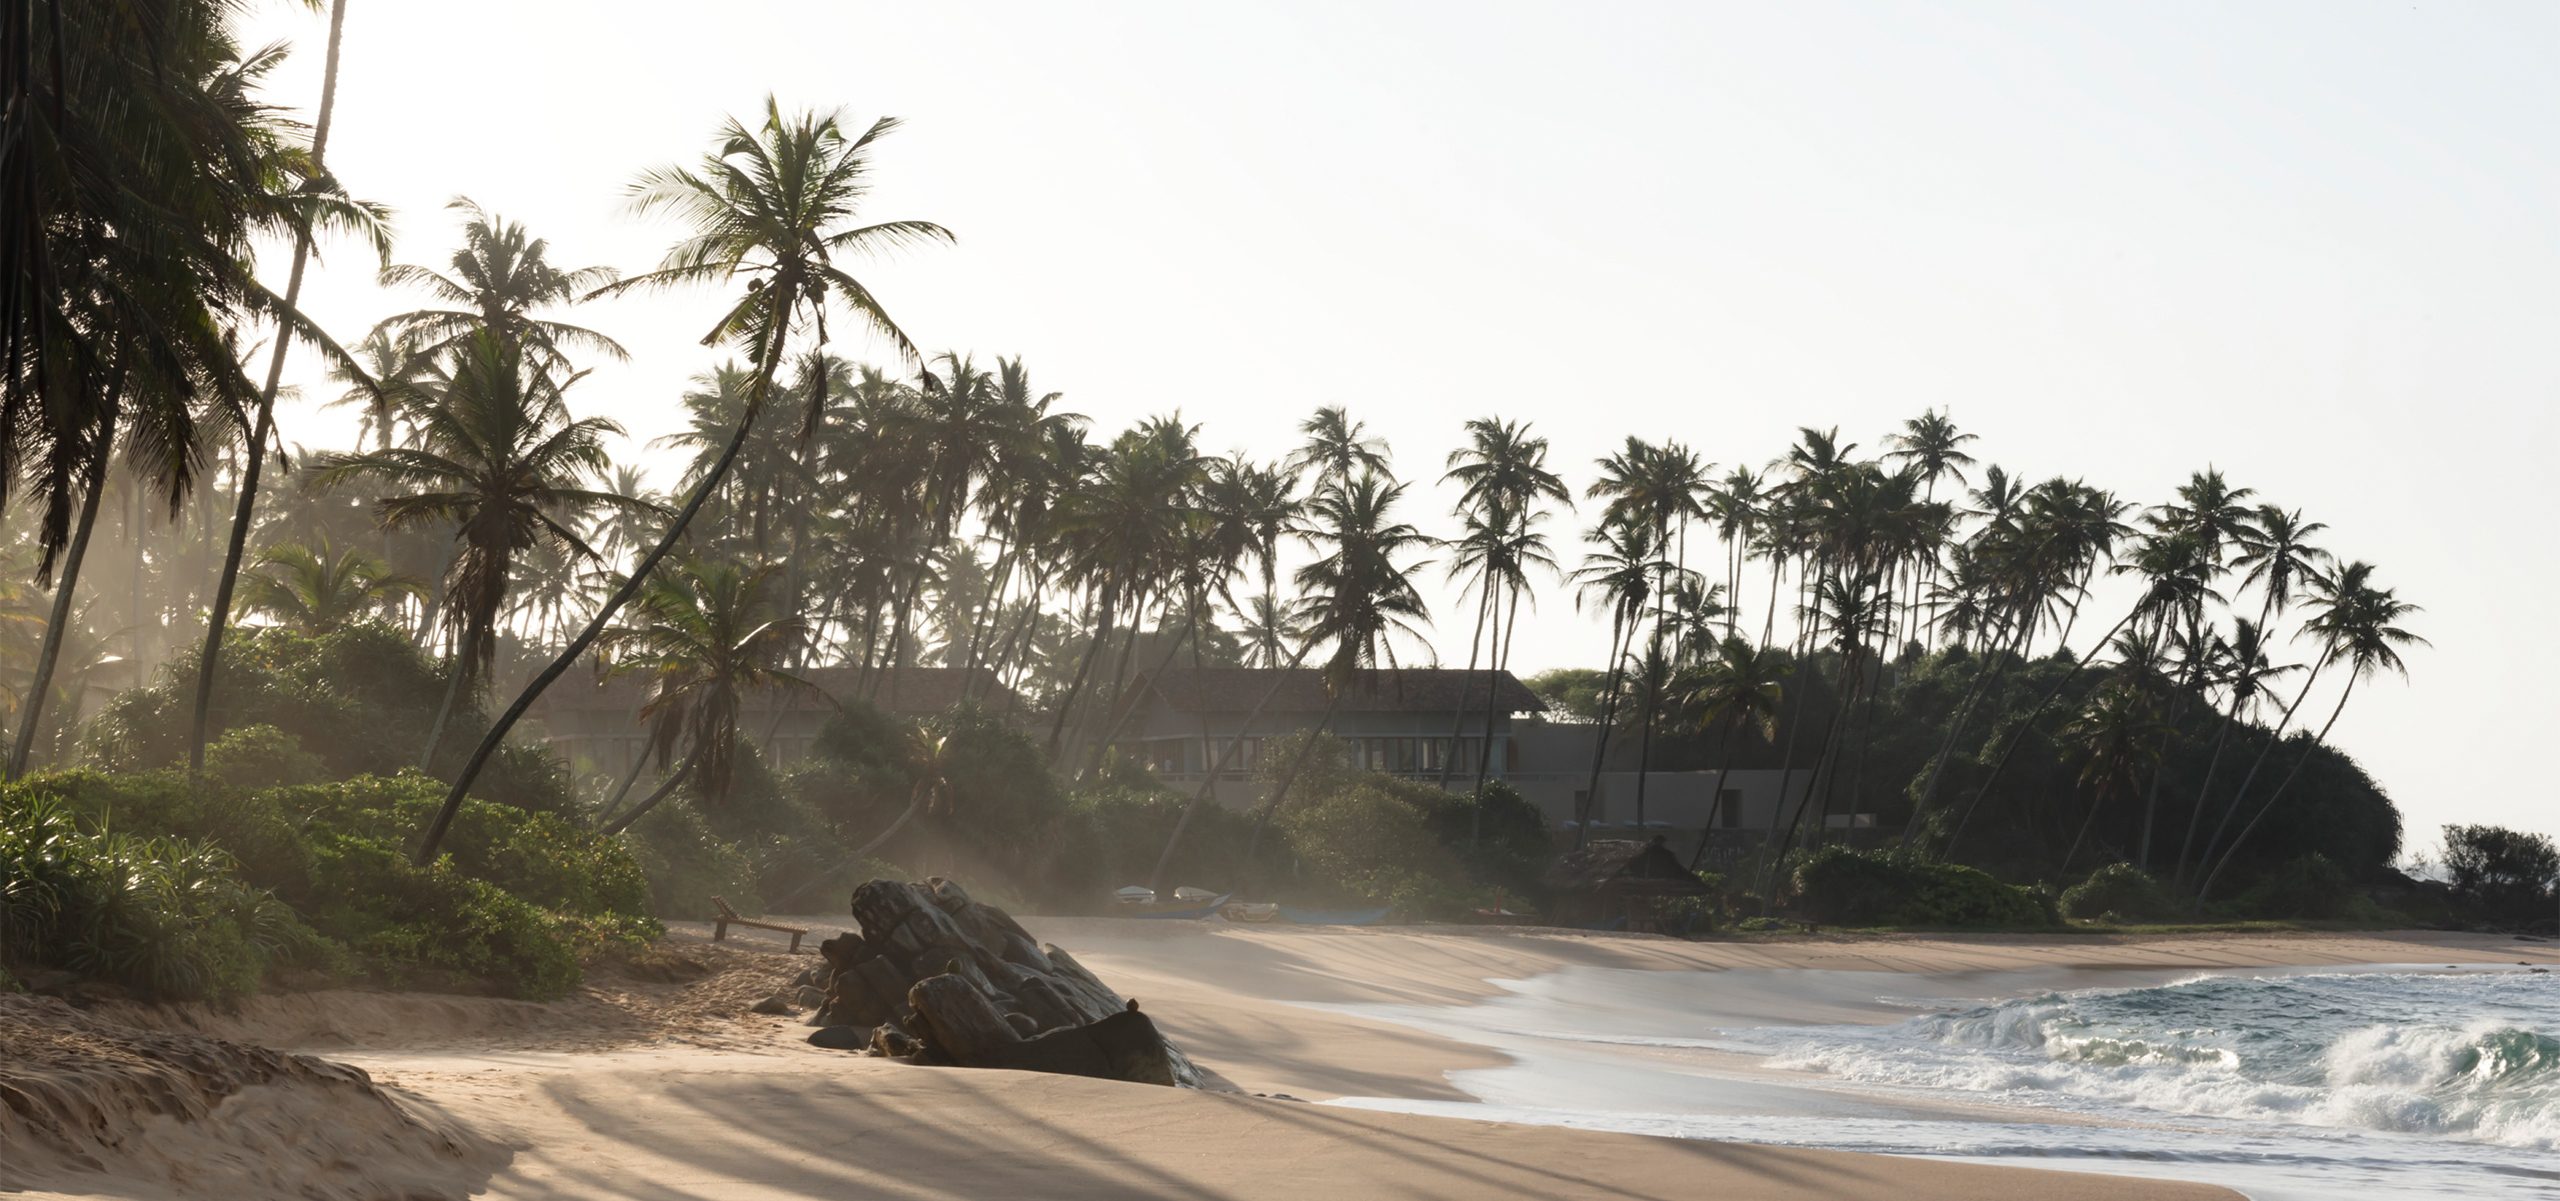 Amanwella, Sri Lanka - Beach_High Res_11006